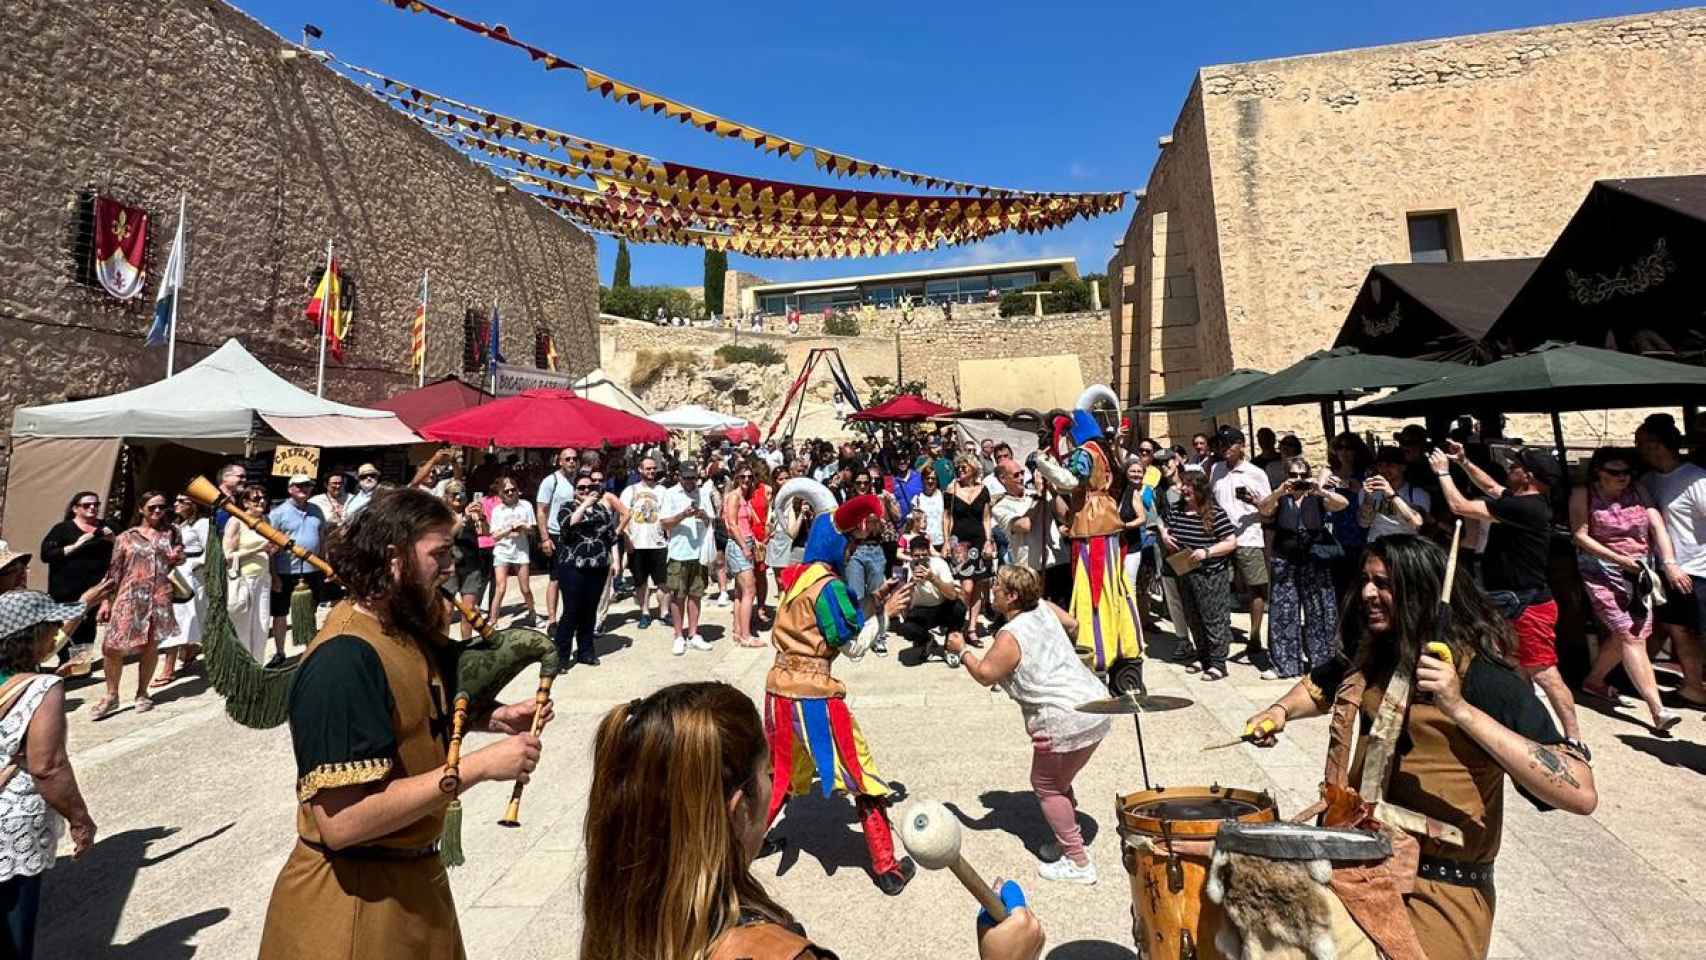 Tematización del Mercado medieval en el castillo de Santa Bárbara de Alicante.